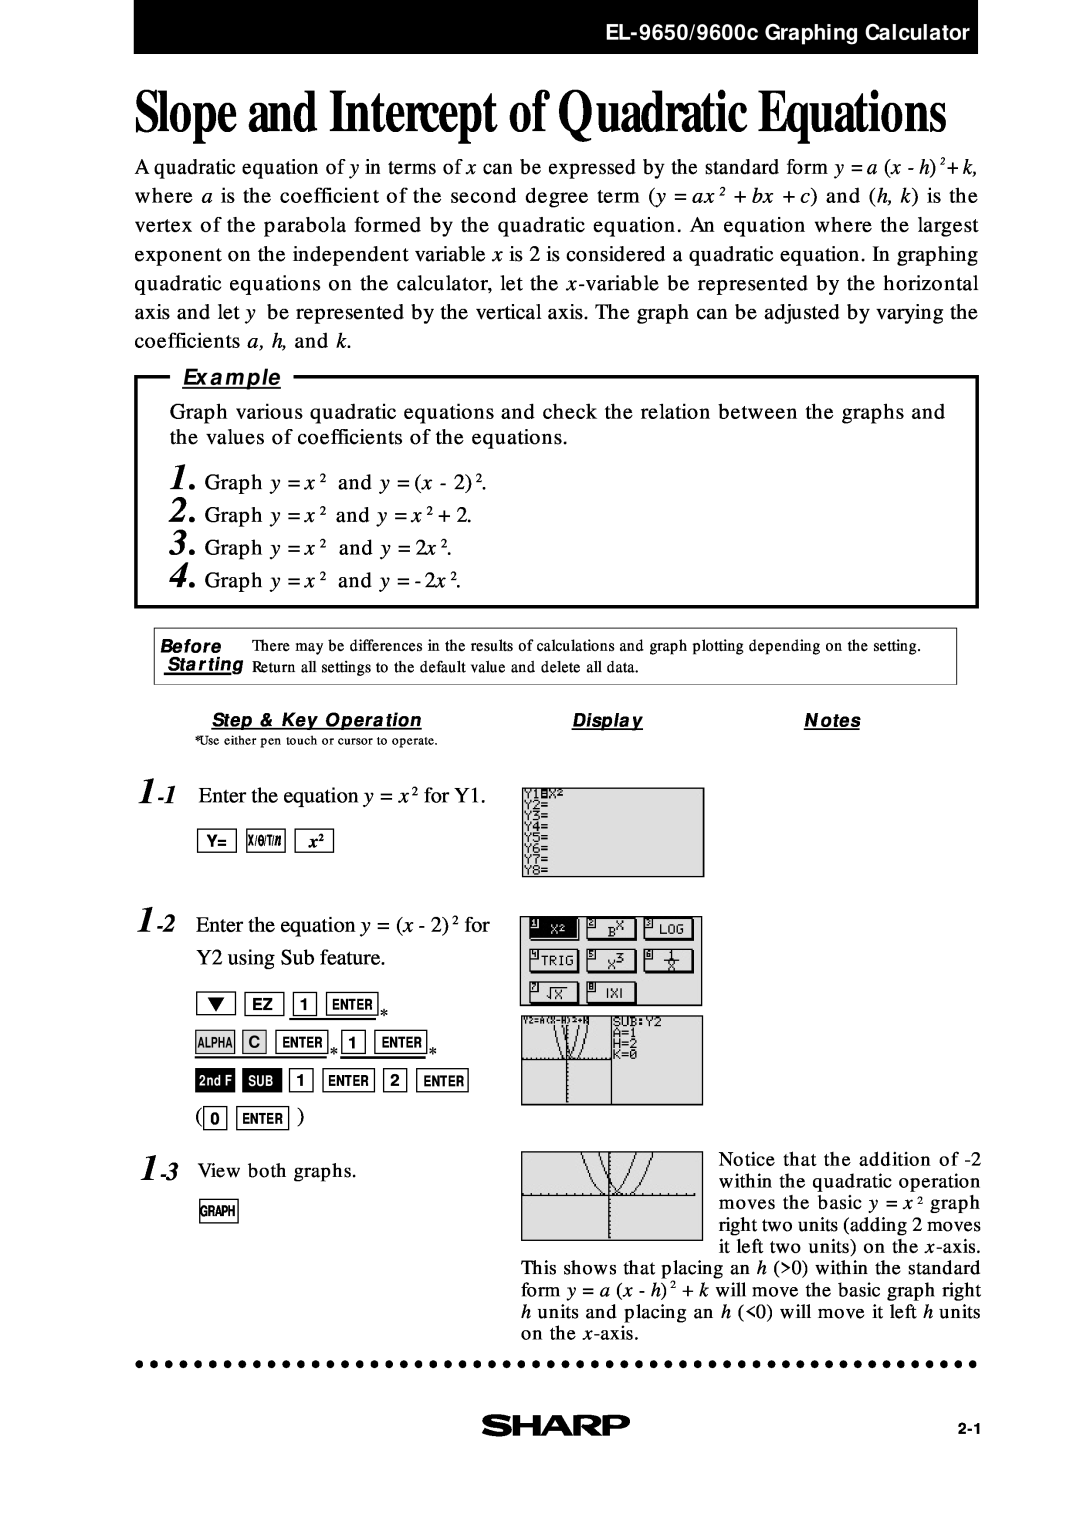 Sharp EL-9400, EL-9600c manual EL-9650/9600c Graphing Calculator, Slope and Intercept of Quadratic Equations, Example 